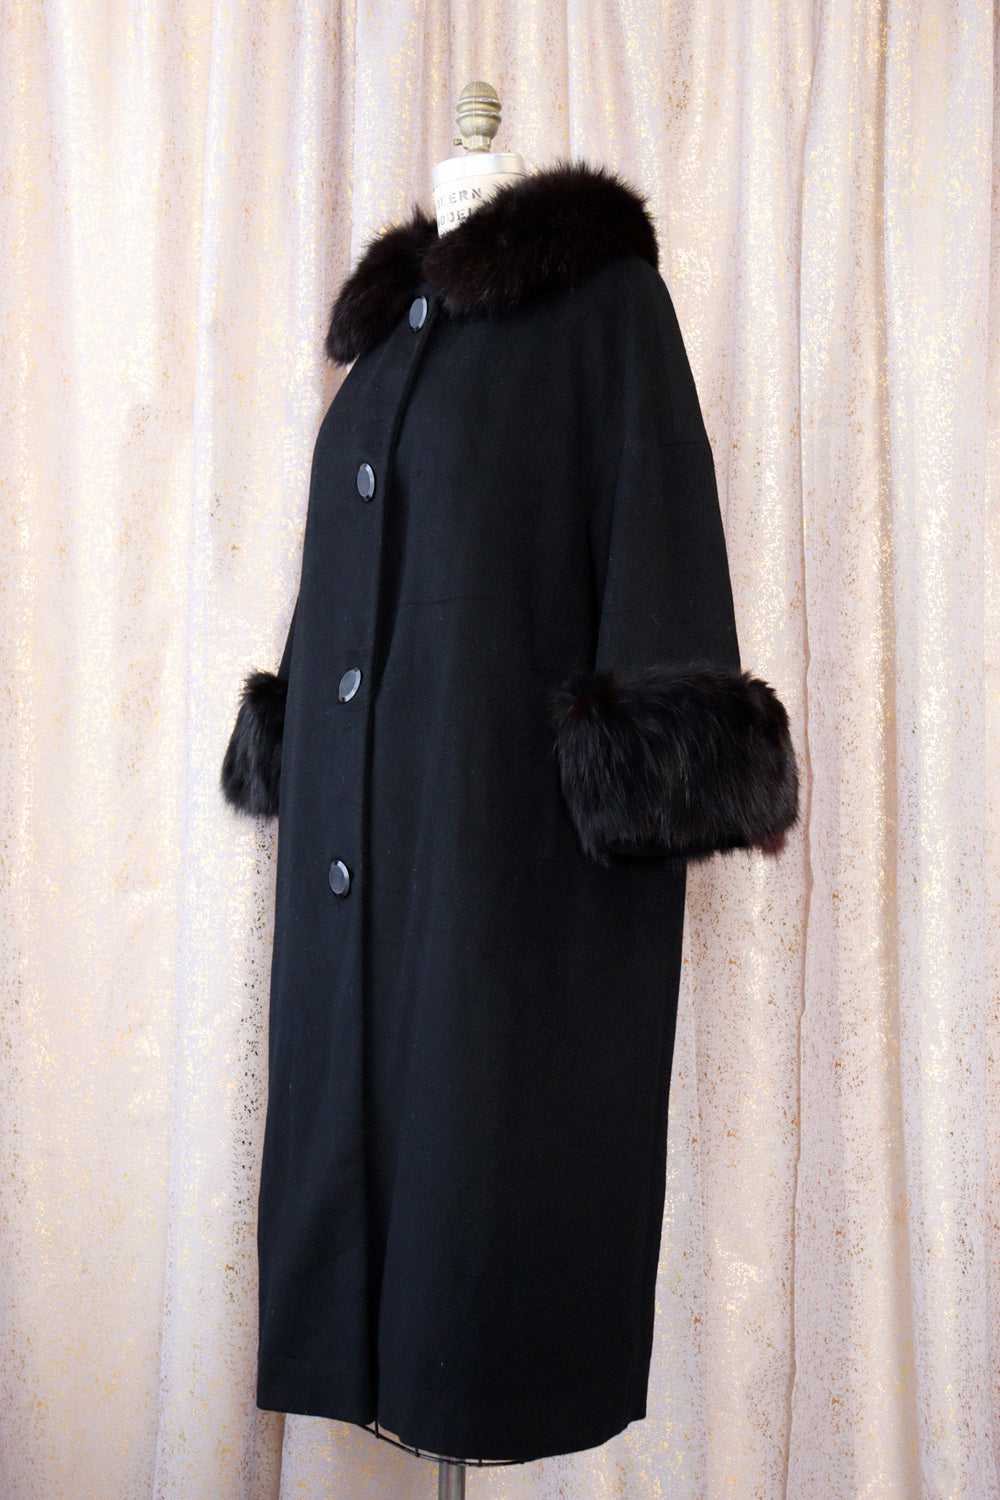 Onyx Fox Fur Trim Coat S/M - image 3